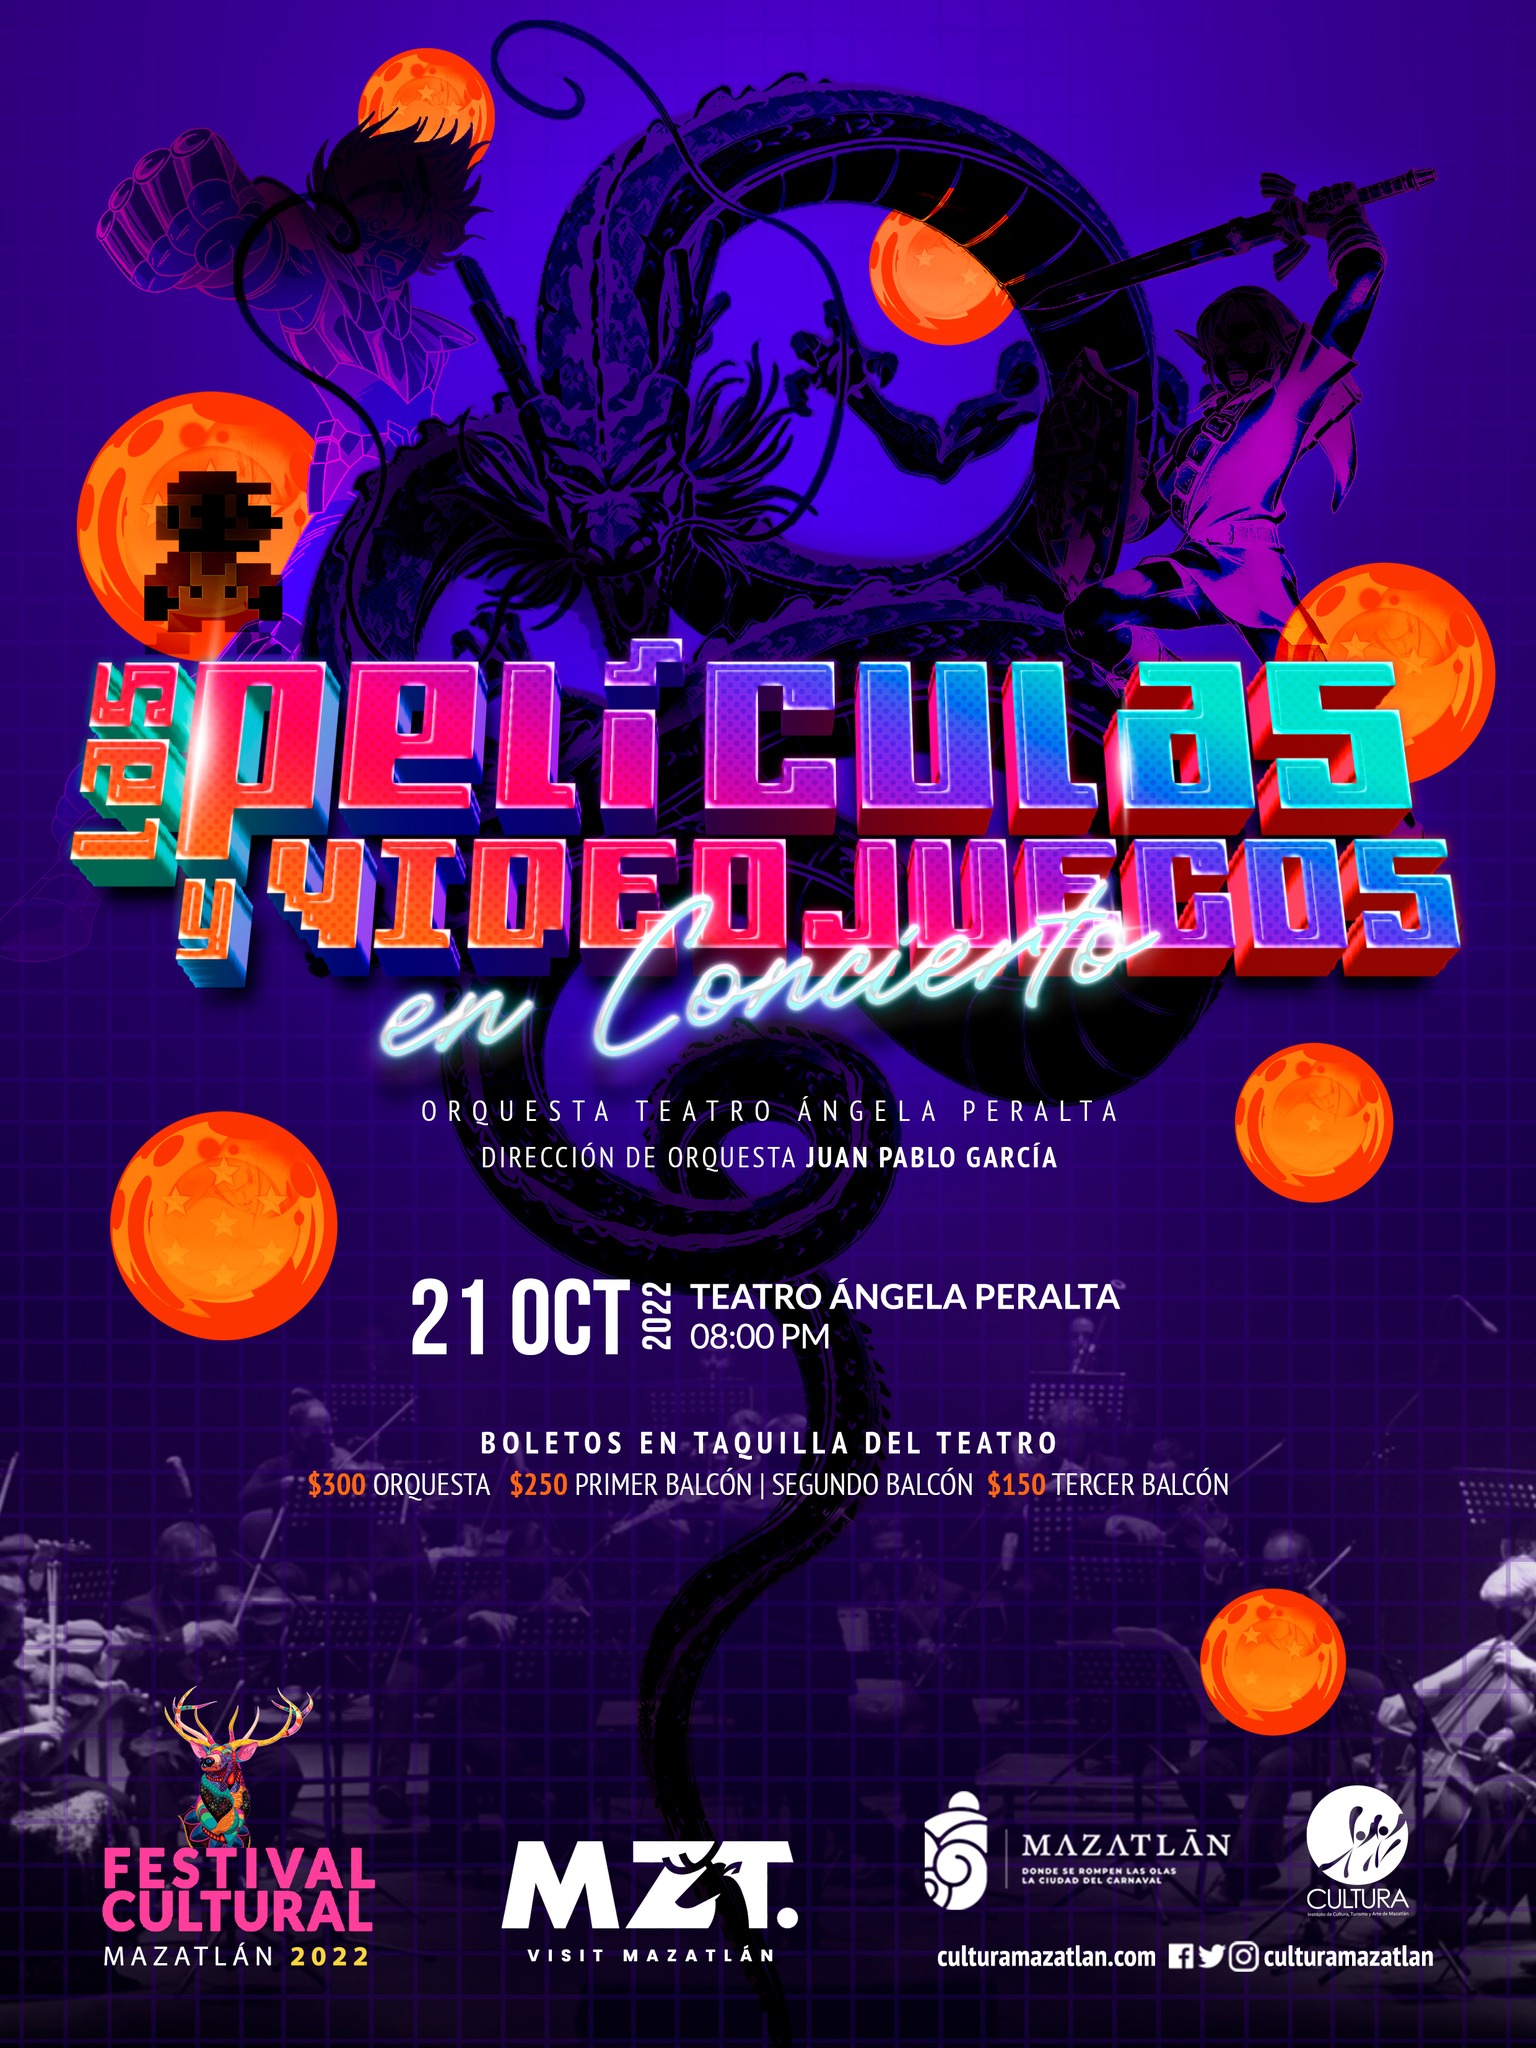 “Las películas y videojuegos en concierto”, este 21 de octubre en el Teatro Ángela Peralta